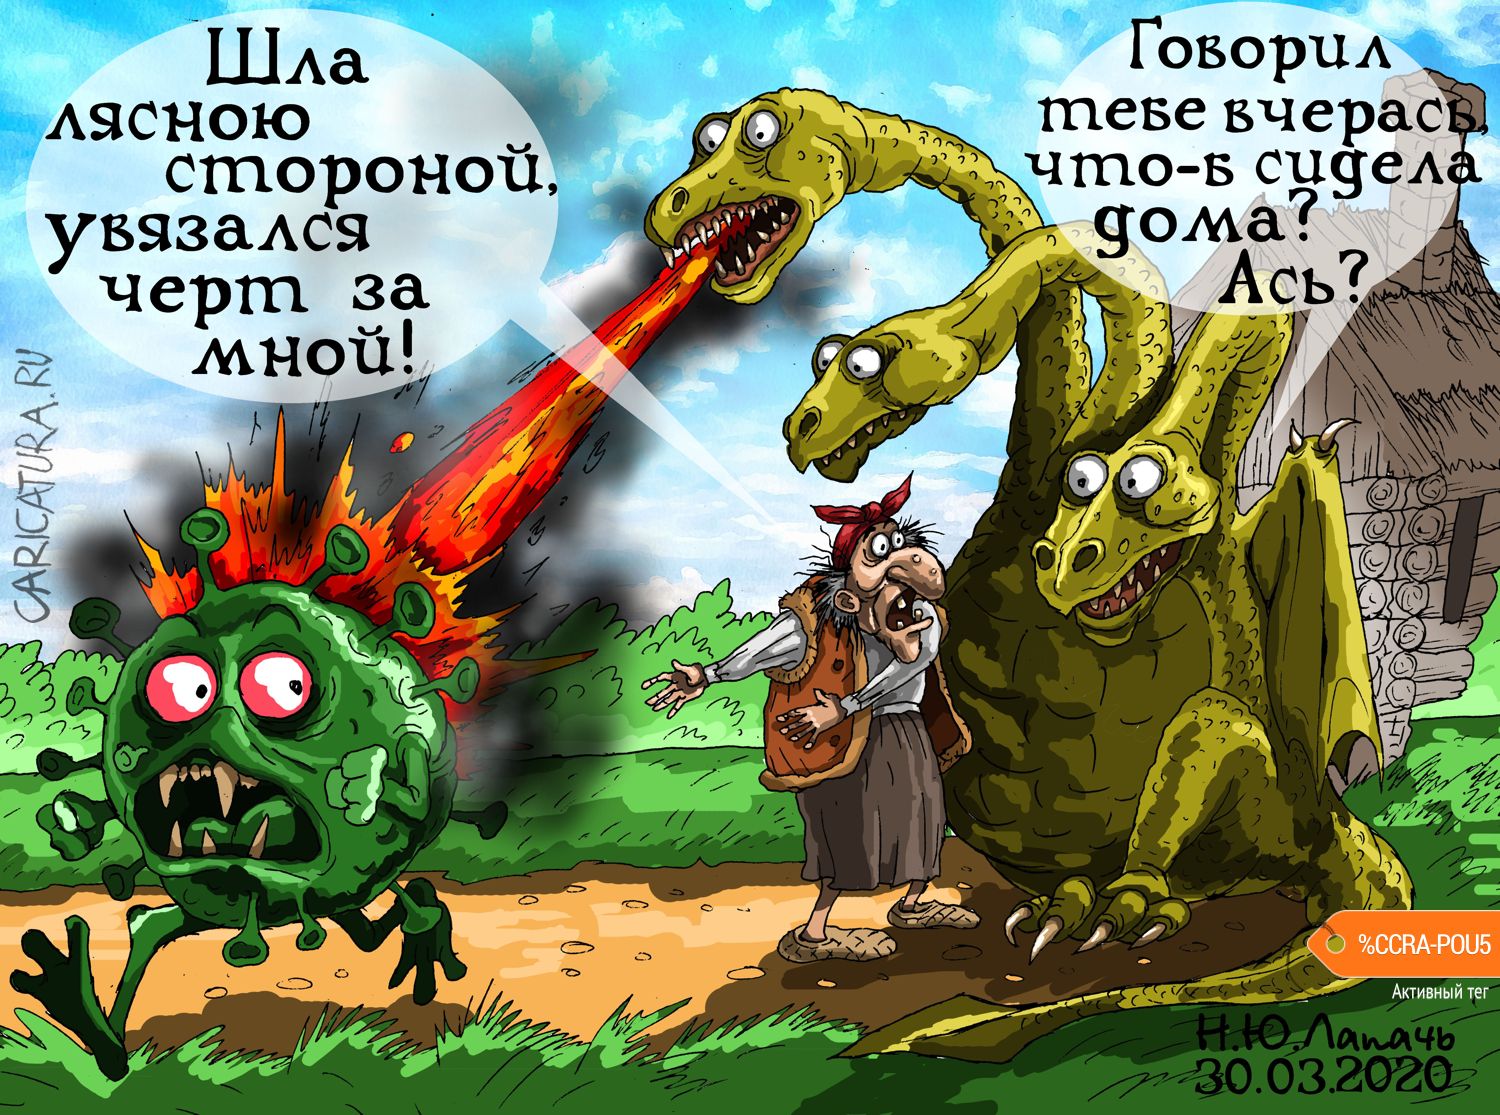 Карикатура "Карантин", Теплый Телогрей